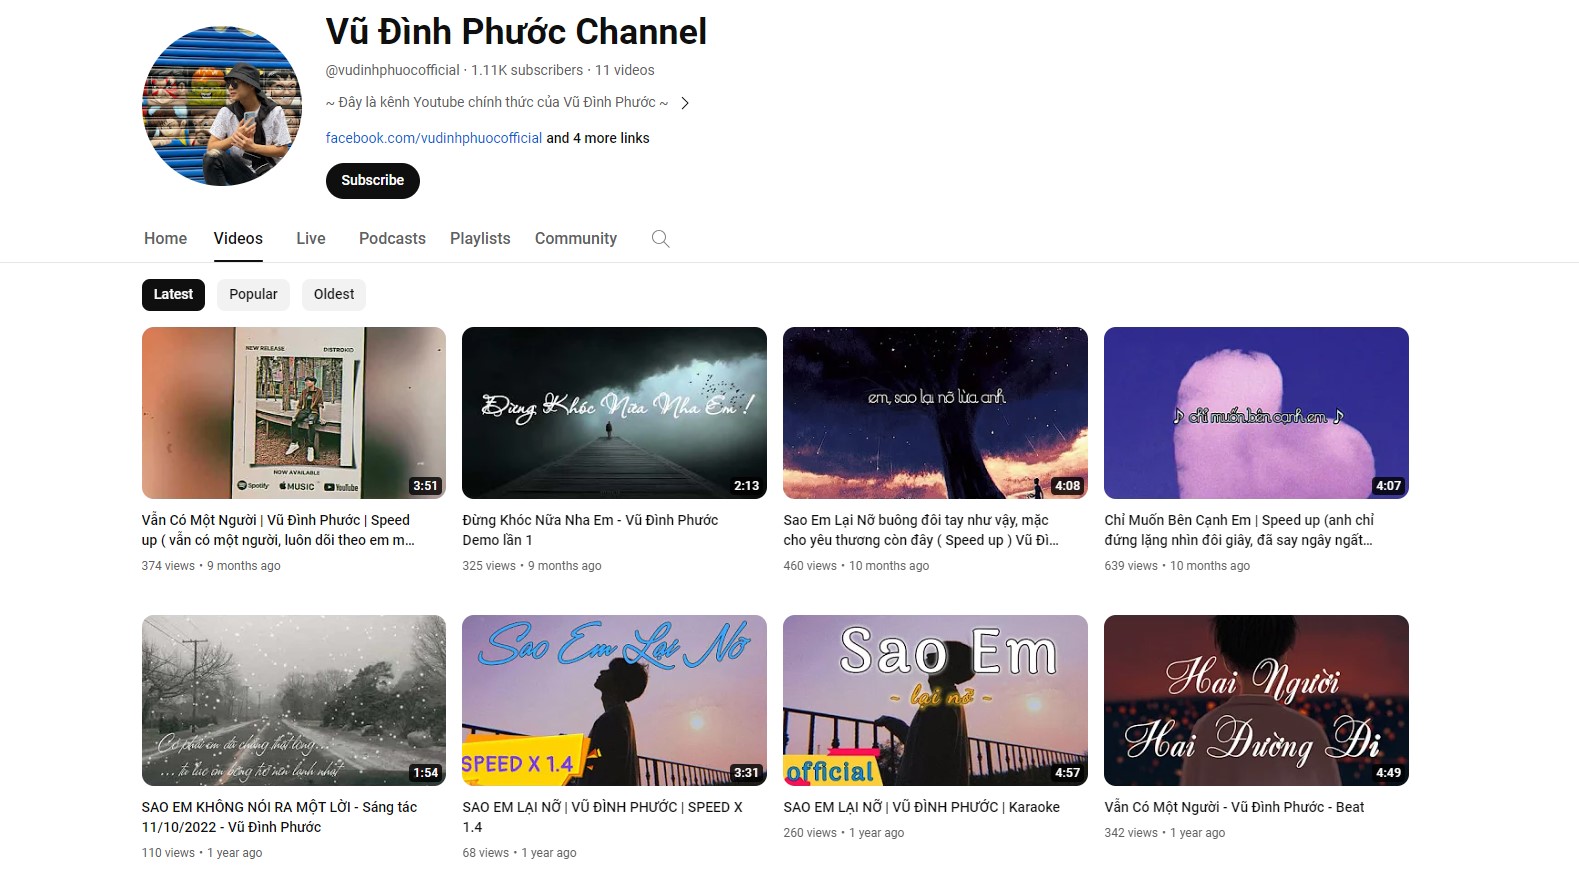 Kênh YouTube Vũ Đình Phước khi hoạt động độc lập và tự phân phối nhạc